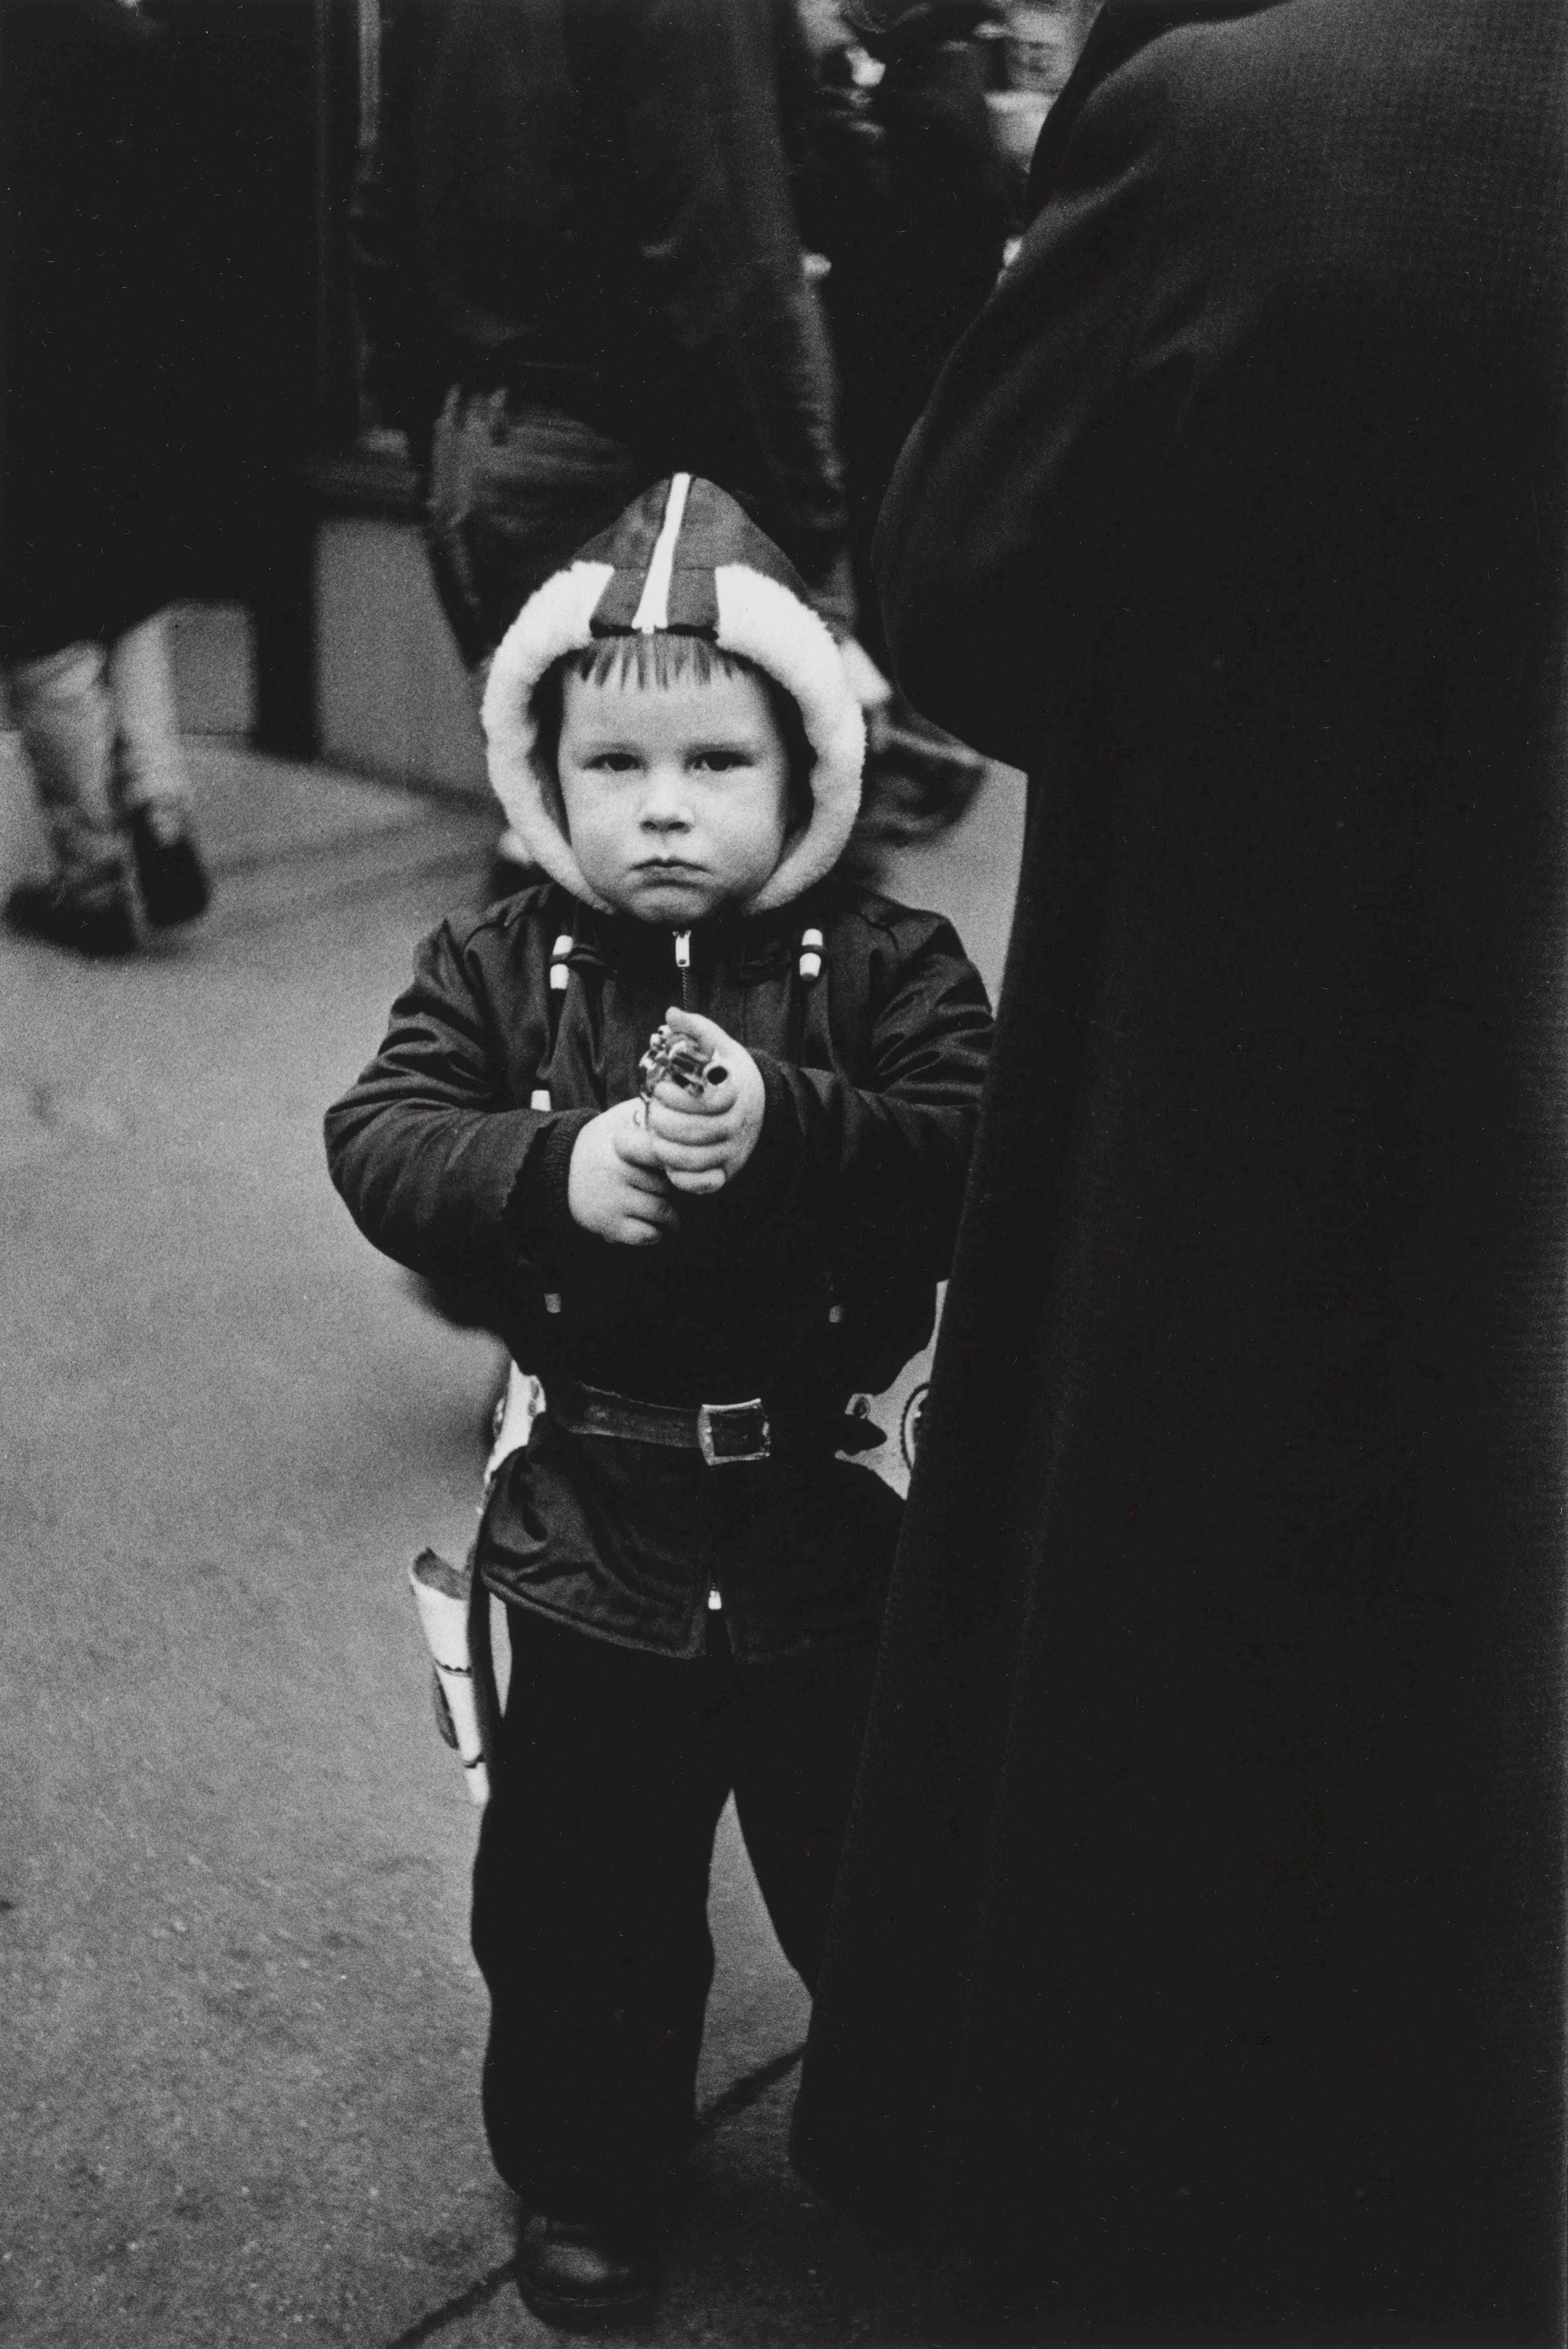 Diane Arbus. Kid in a hooded jacket aiming a gun, N.Y.C. 1957.